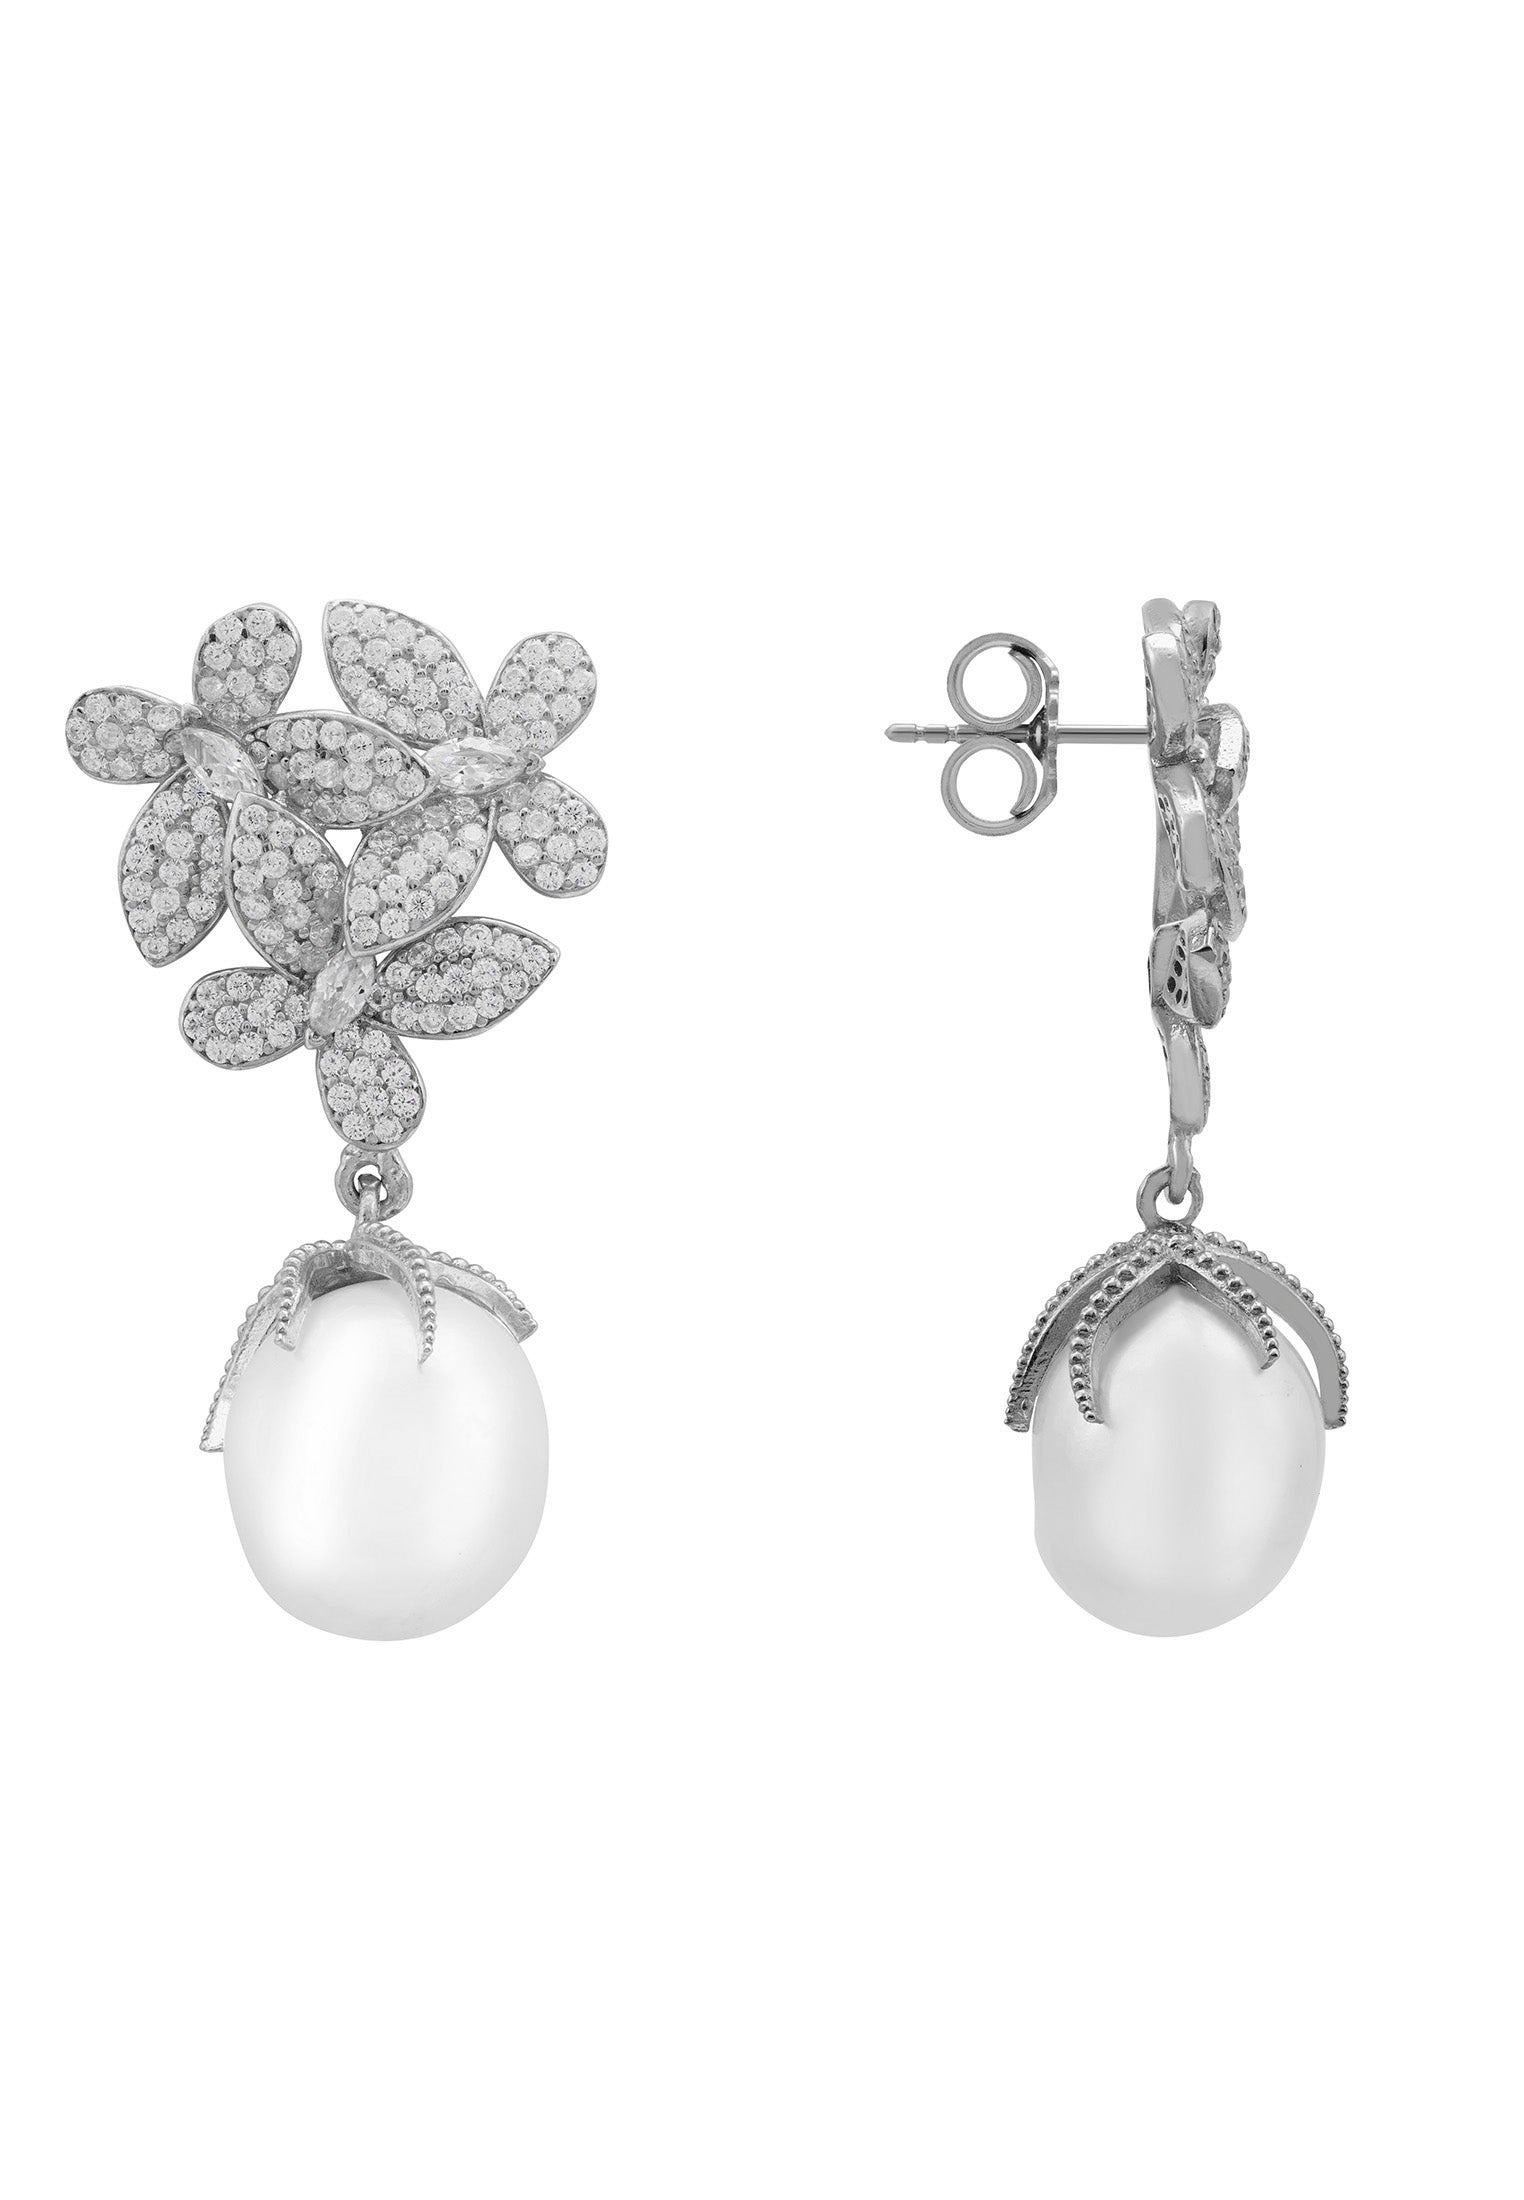 Blumen Barock Perlen Ohrringe Silber Weiß